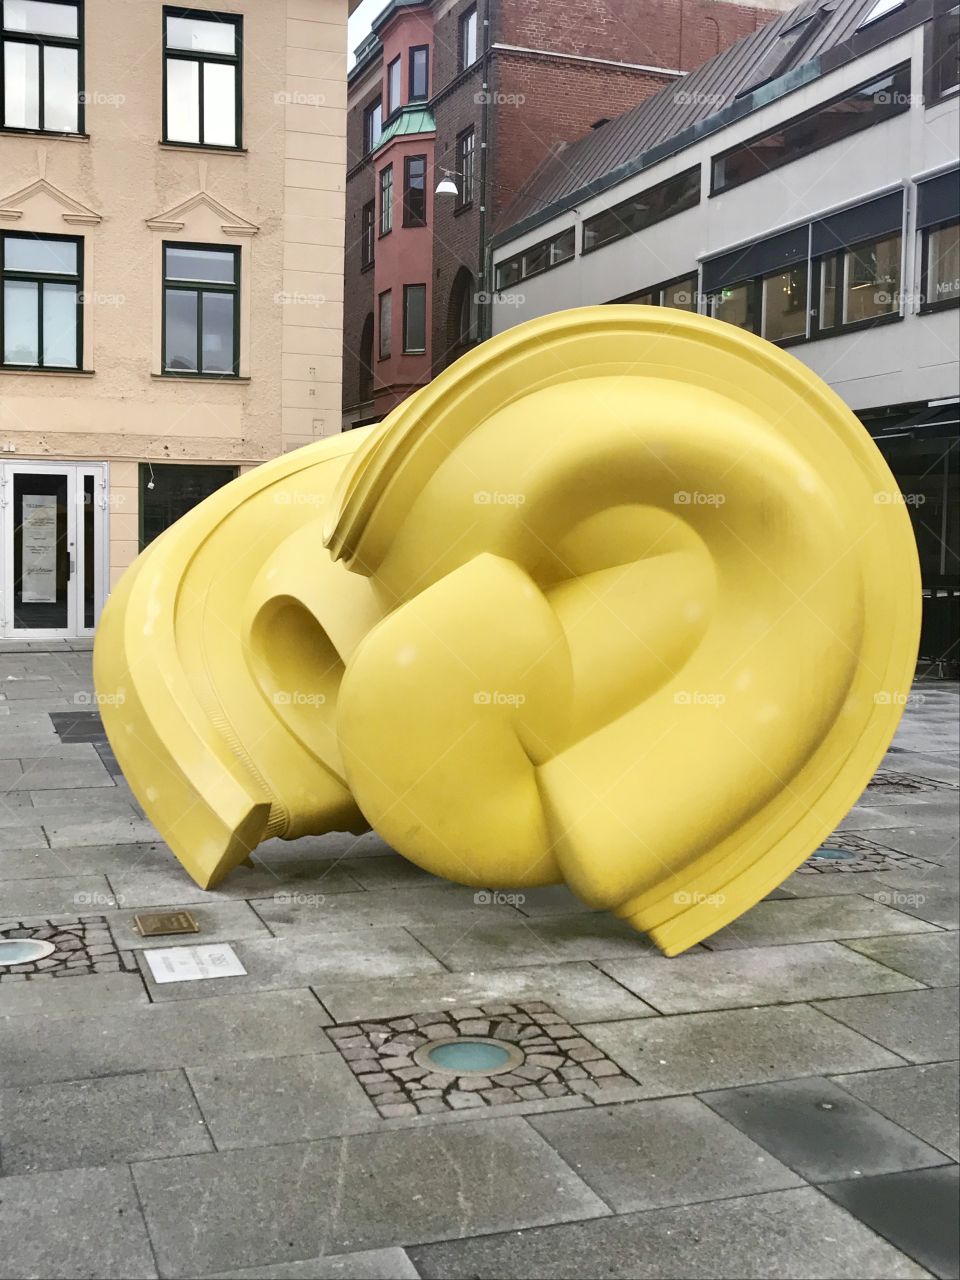 Borås sweden, december, city art, sculpture
